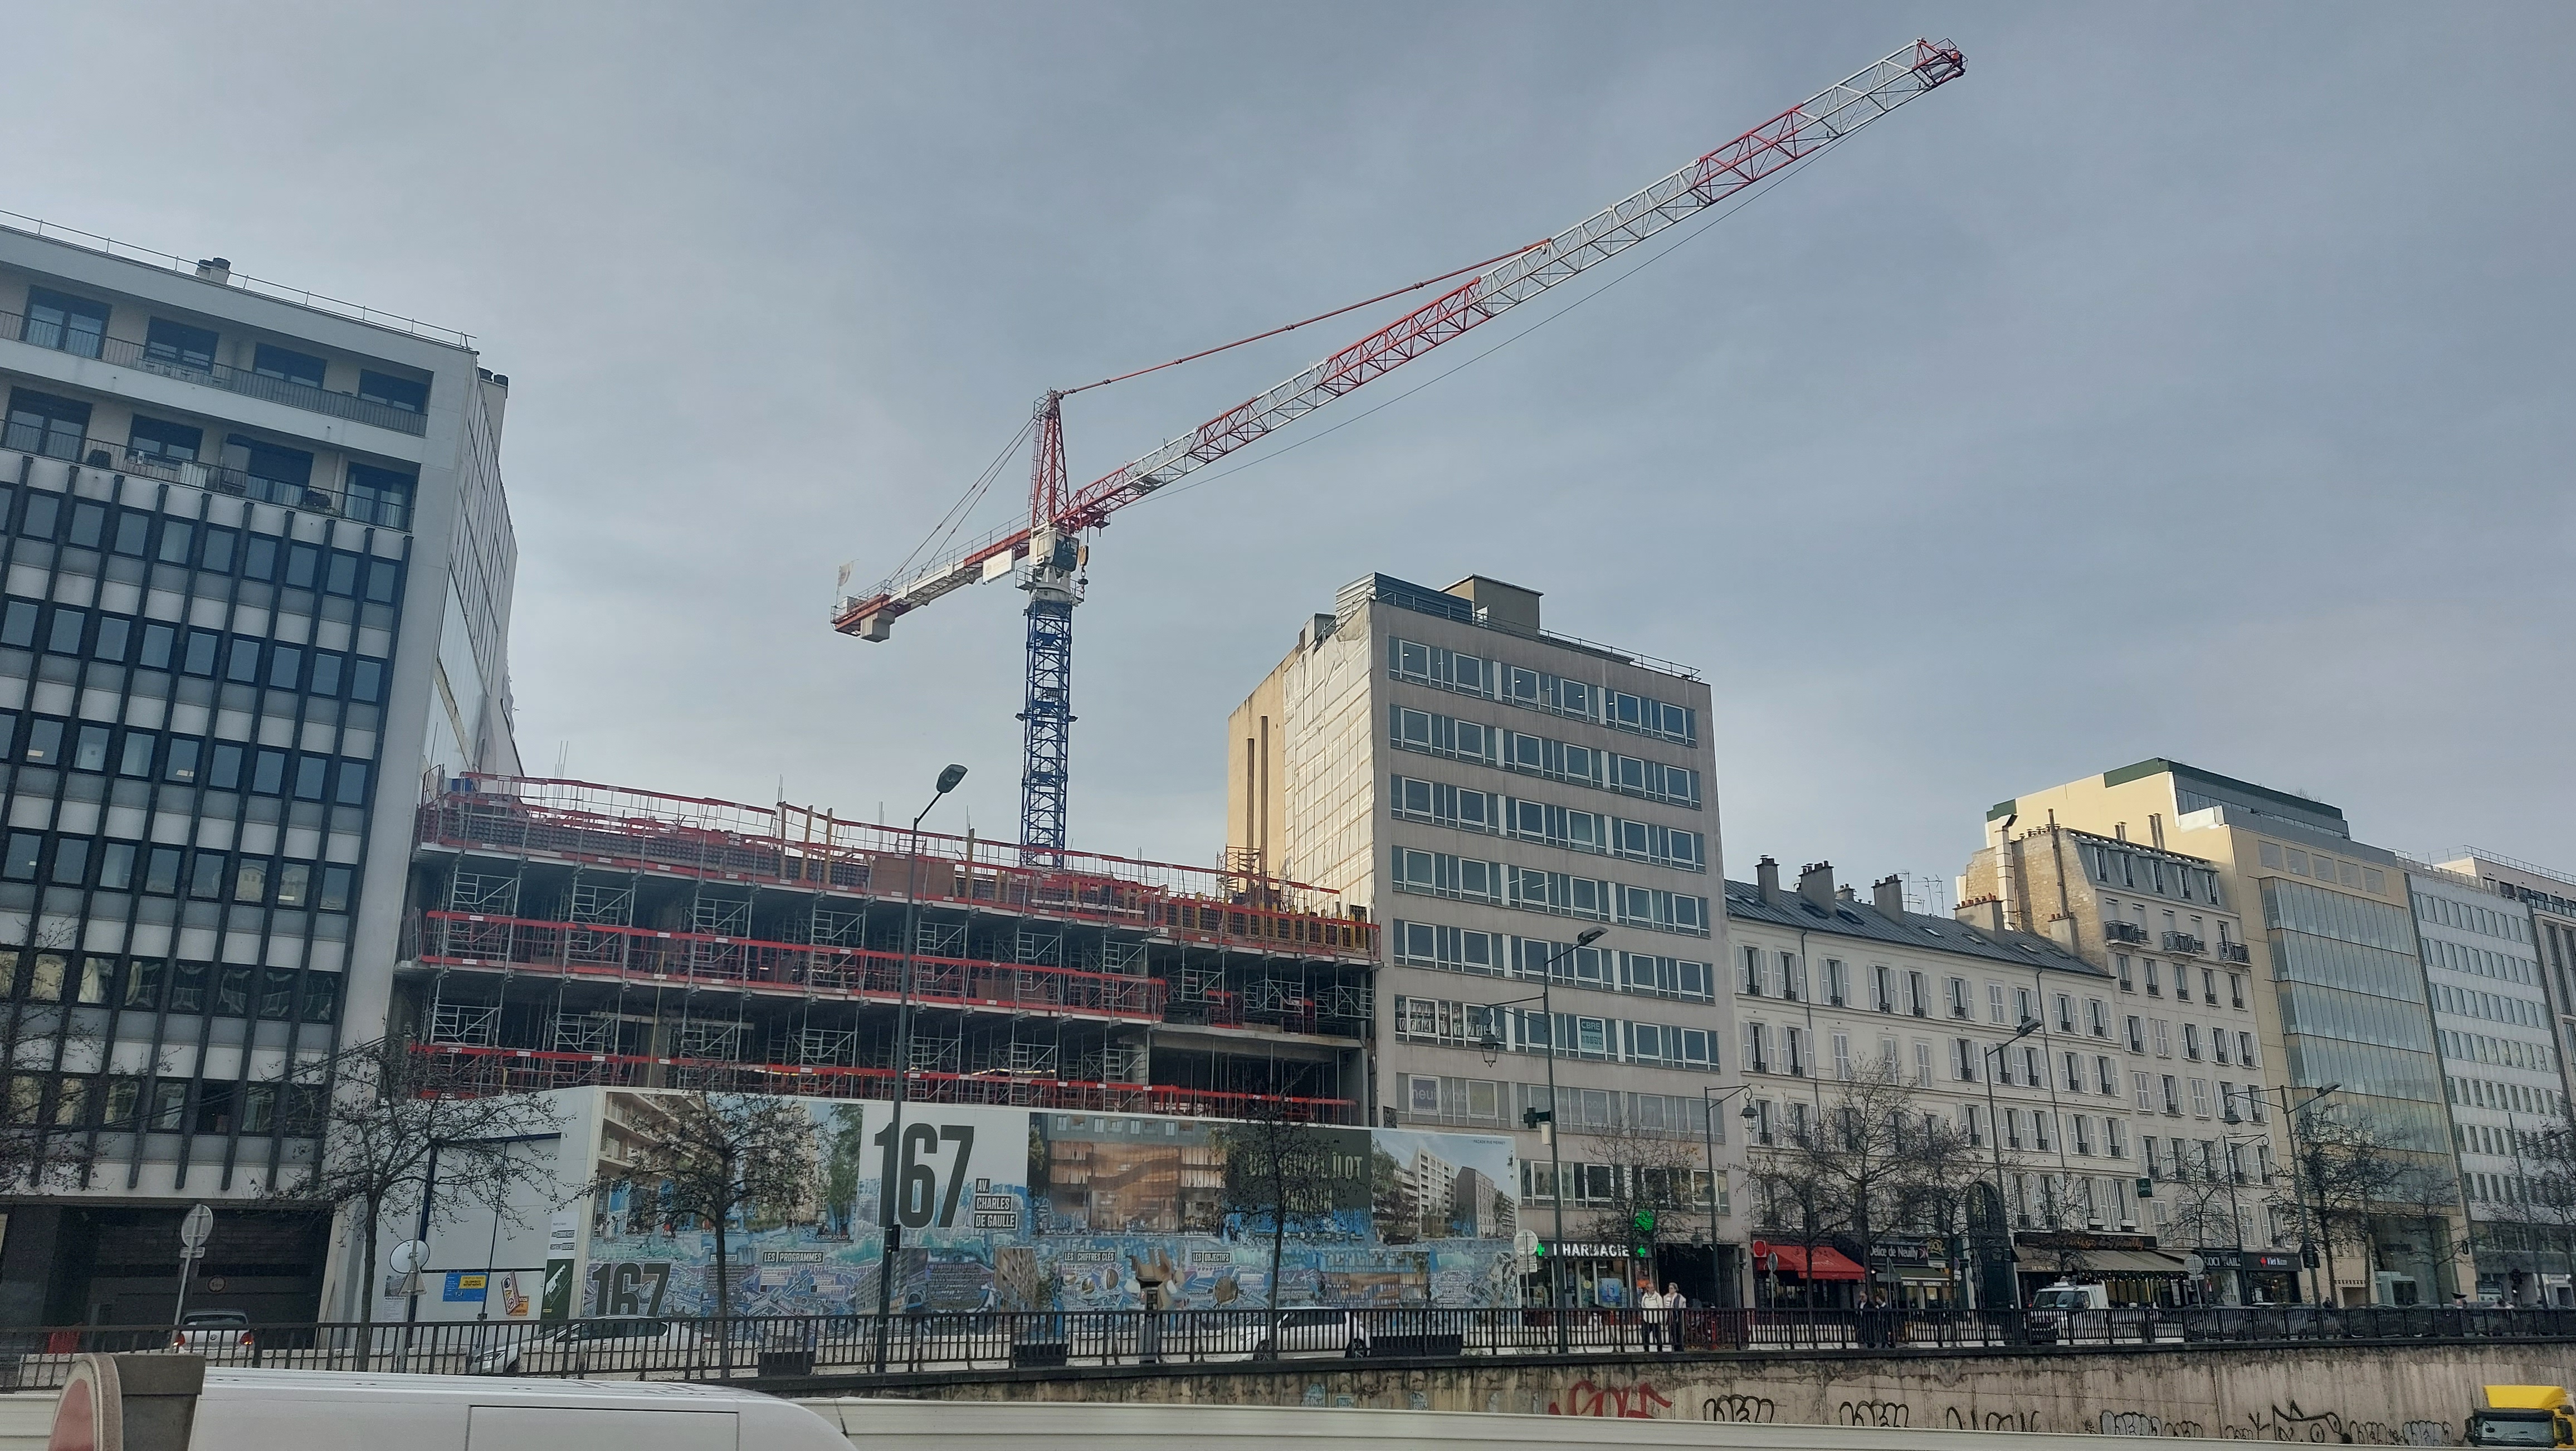 Neuilly-sur-Seine, ce mercredi. Avenue Charles-de-Gaulle, 200 logements sociaux sont en cours de construction. Un effort suffisant pour rattraper le retard accumulé ? LP/Anne-Sophie Damecour